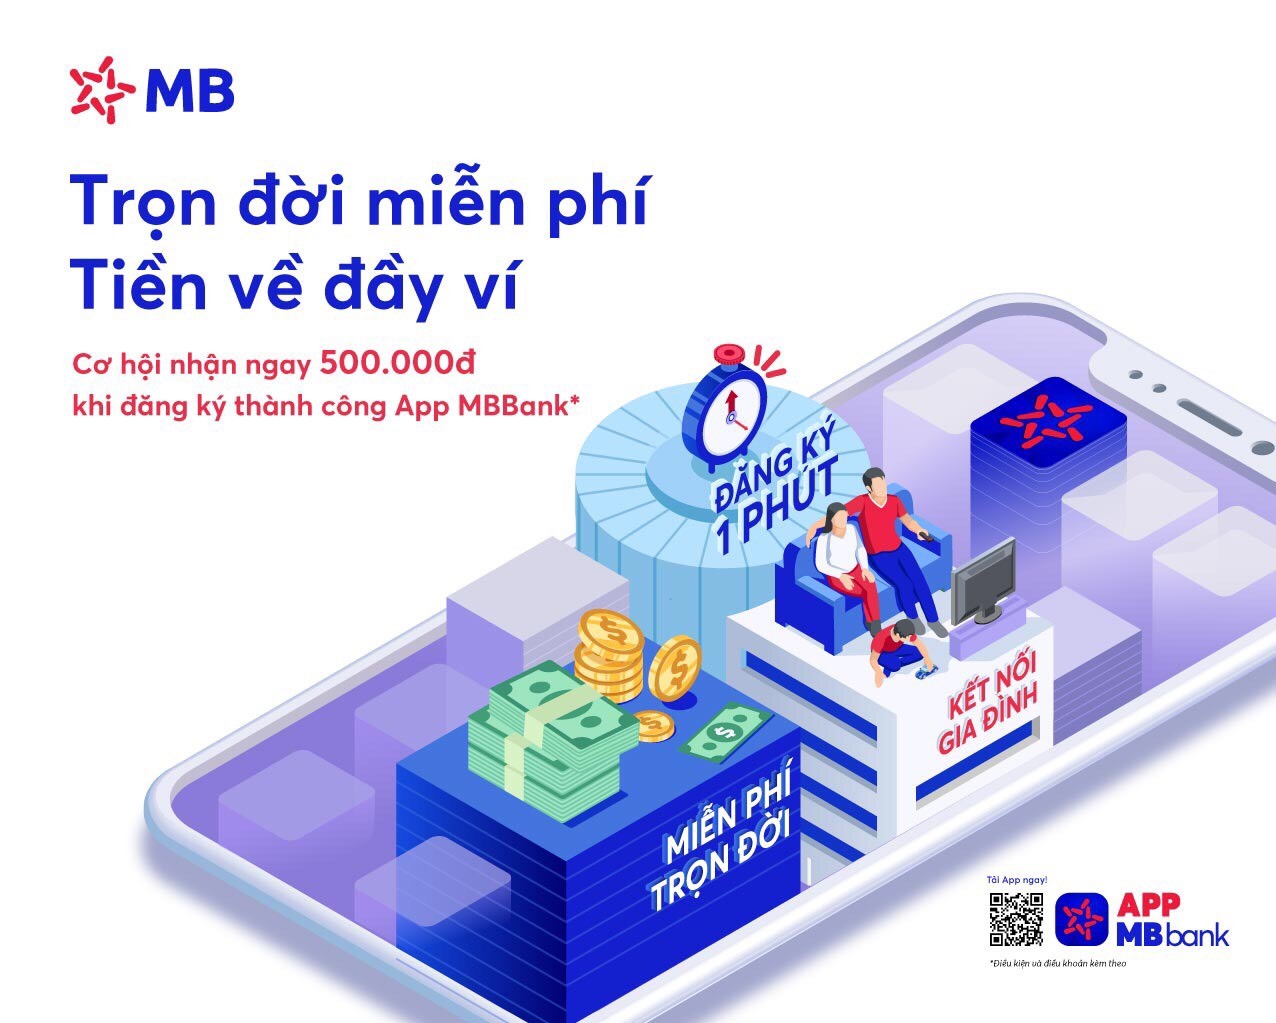 MB ưu đãi đến 2 tỷ đồng mừng App MBBank phiên bản mới